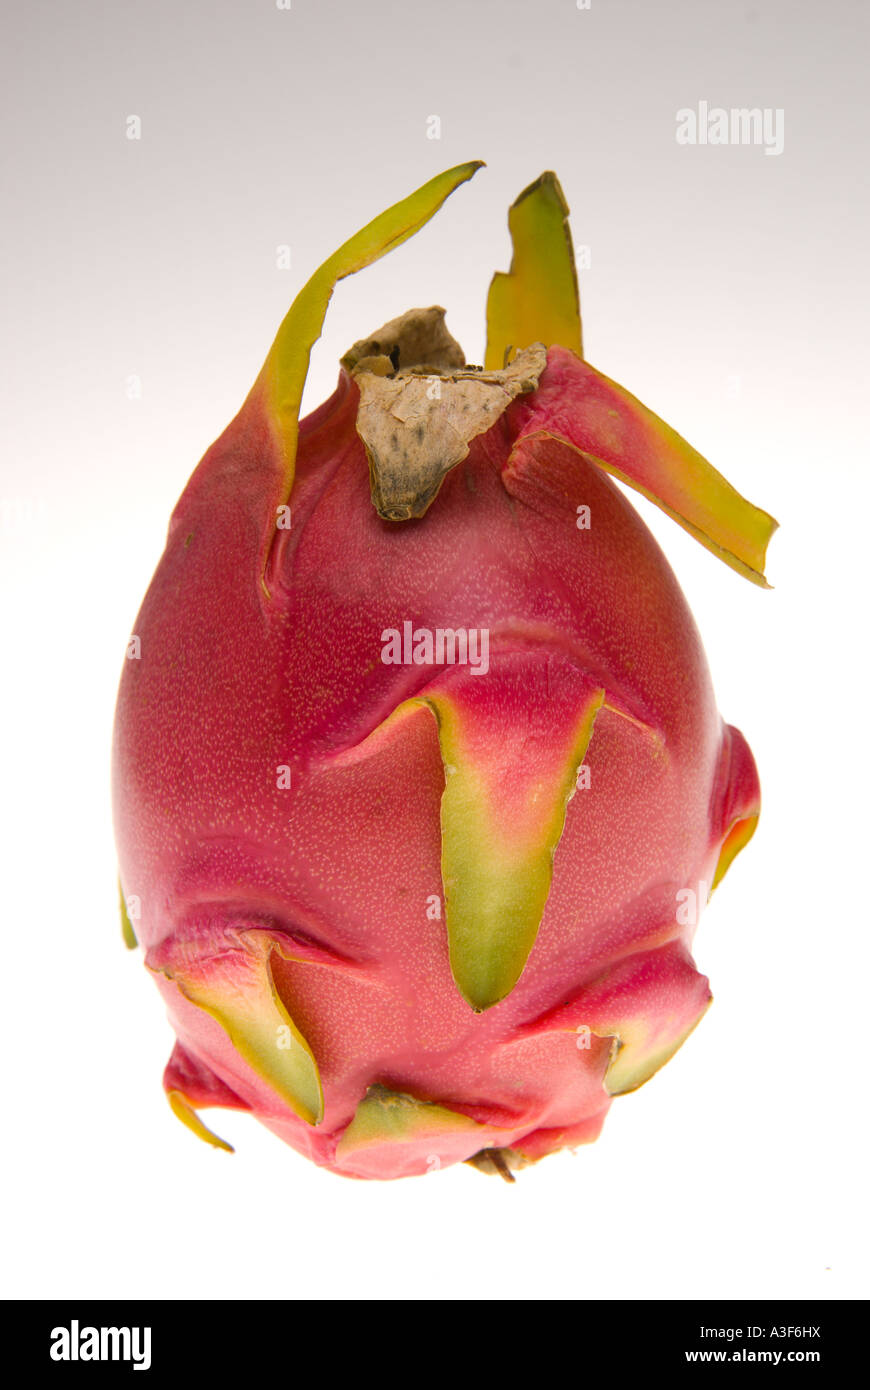 Dragonfruit or strawberry pear S E Asian cactus fruit pitaya Stock Photo